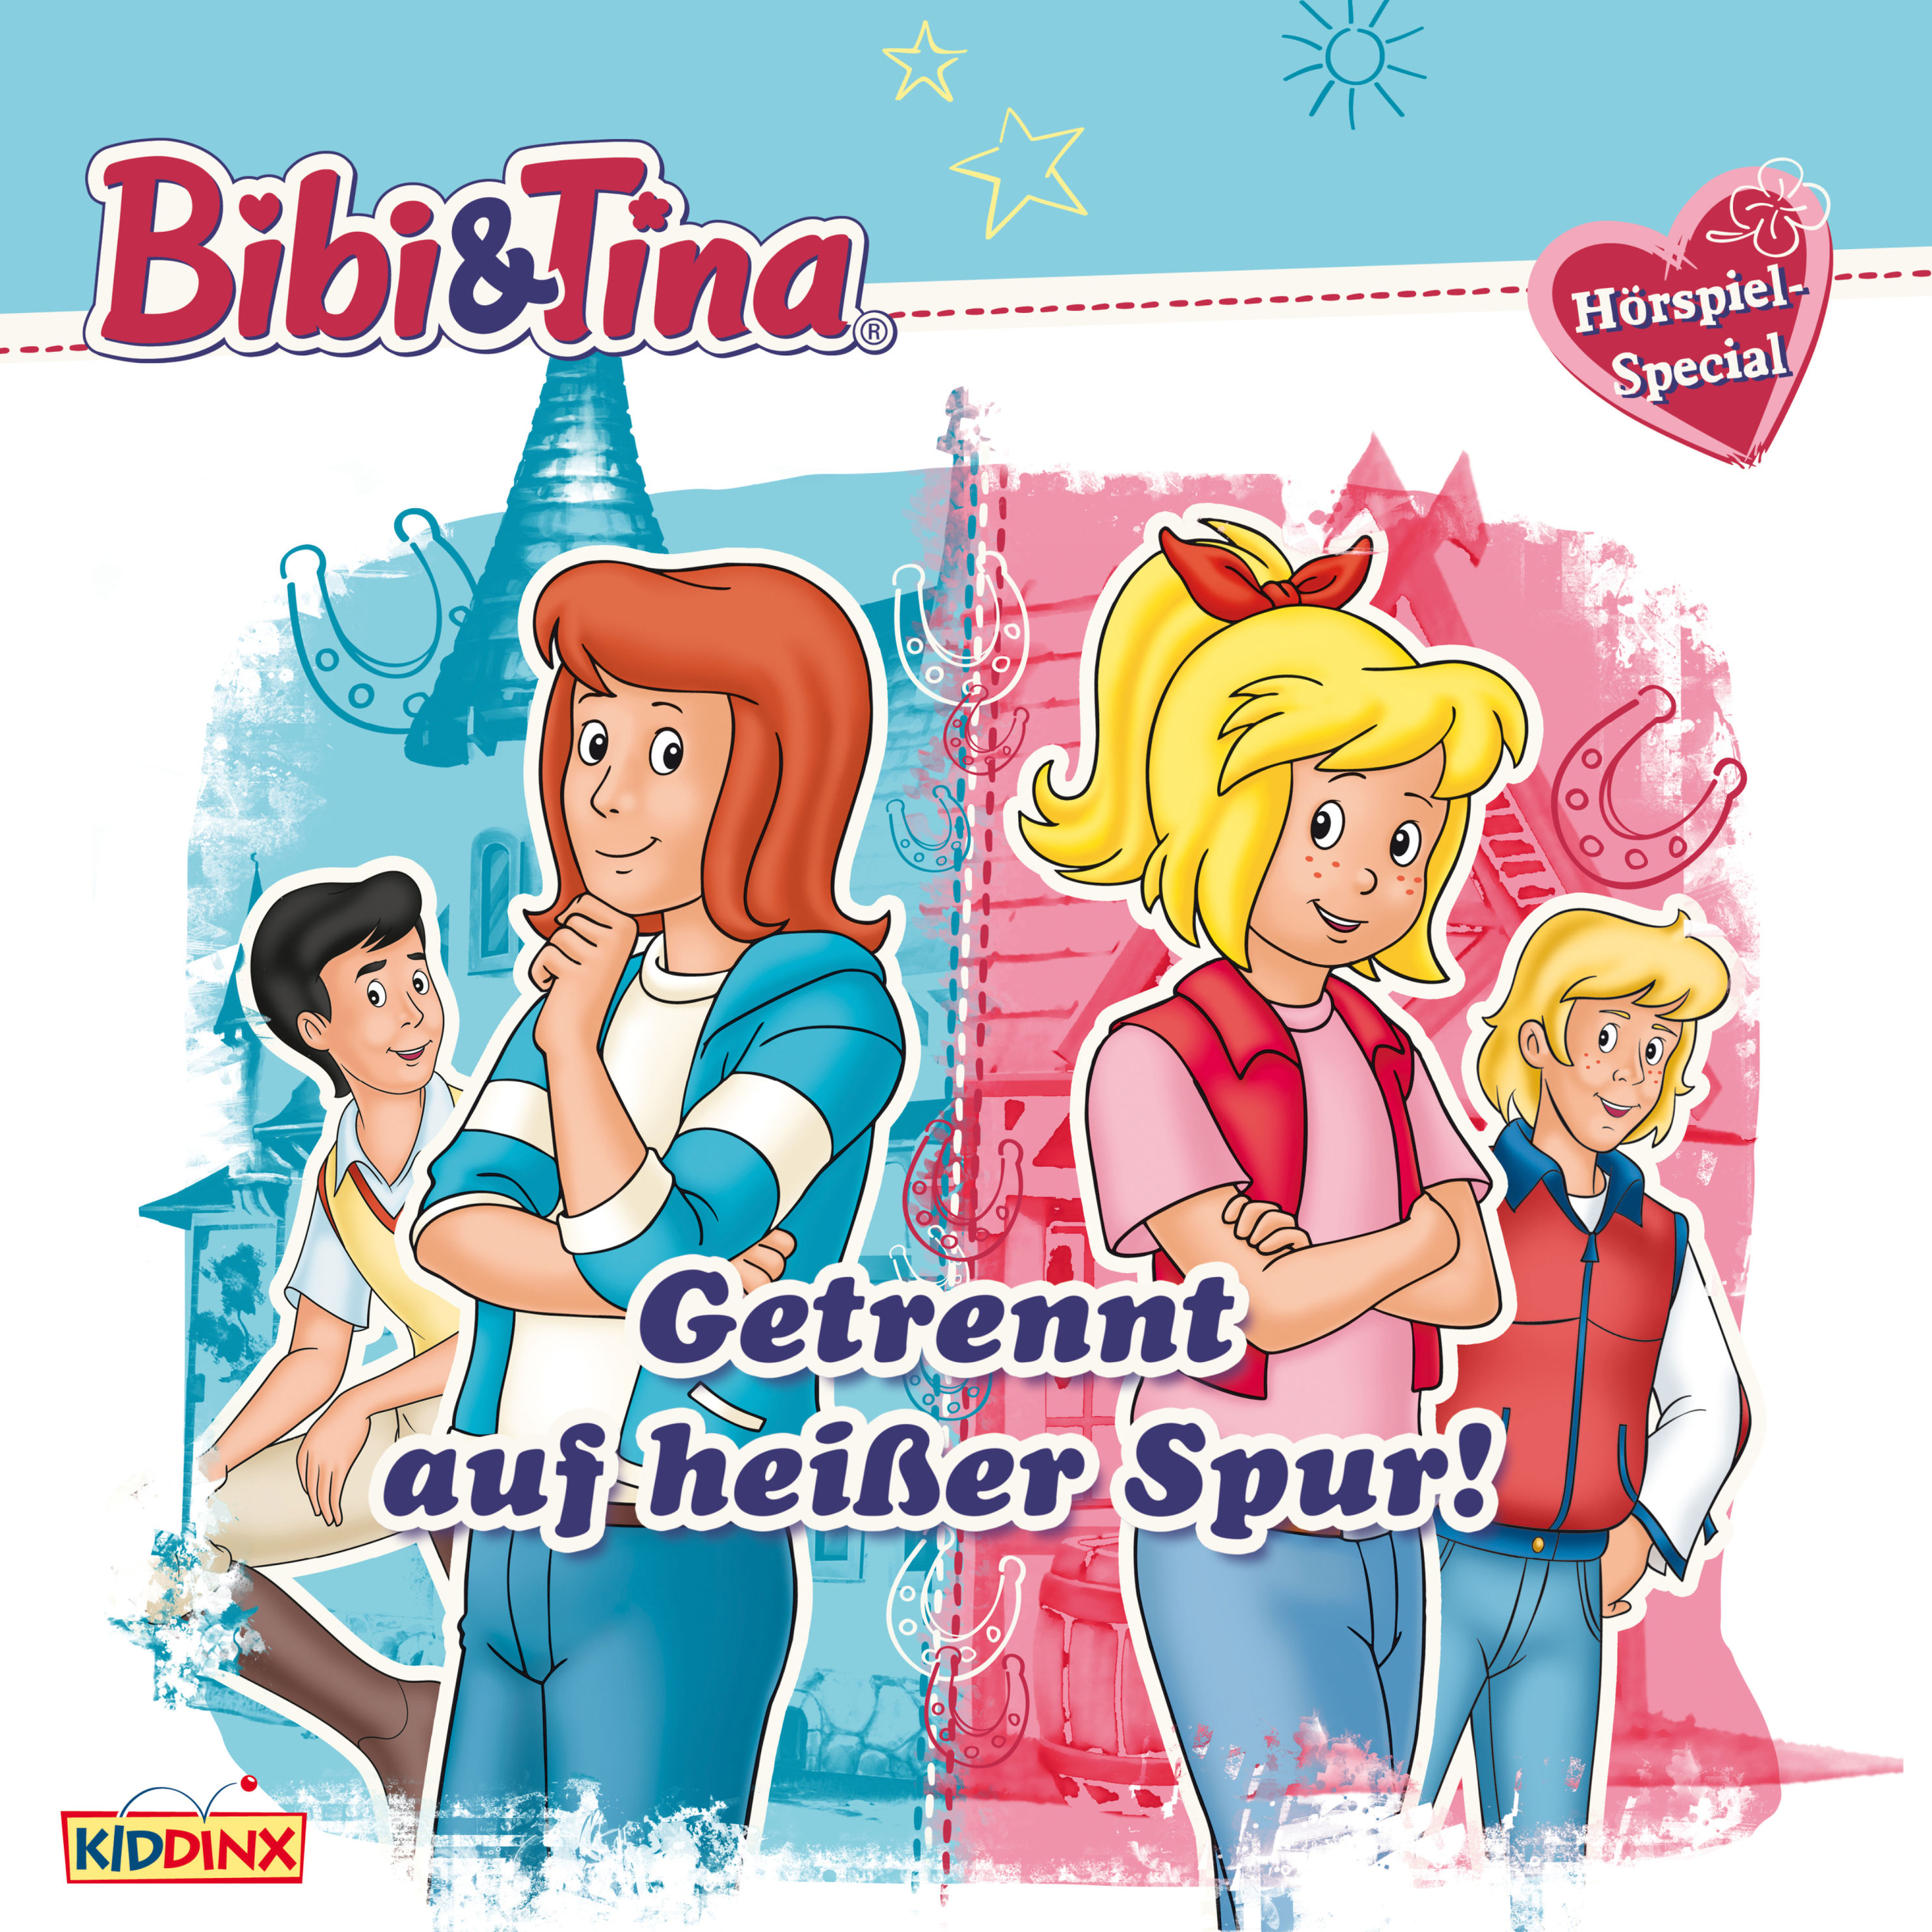 Bibi & Tina - Bibi & Tina: Getrennt auf heißer Spur! Hörspiel-Special  Hörbuch Download